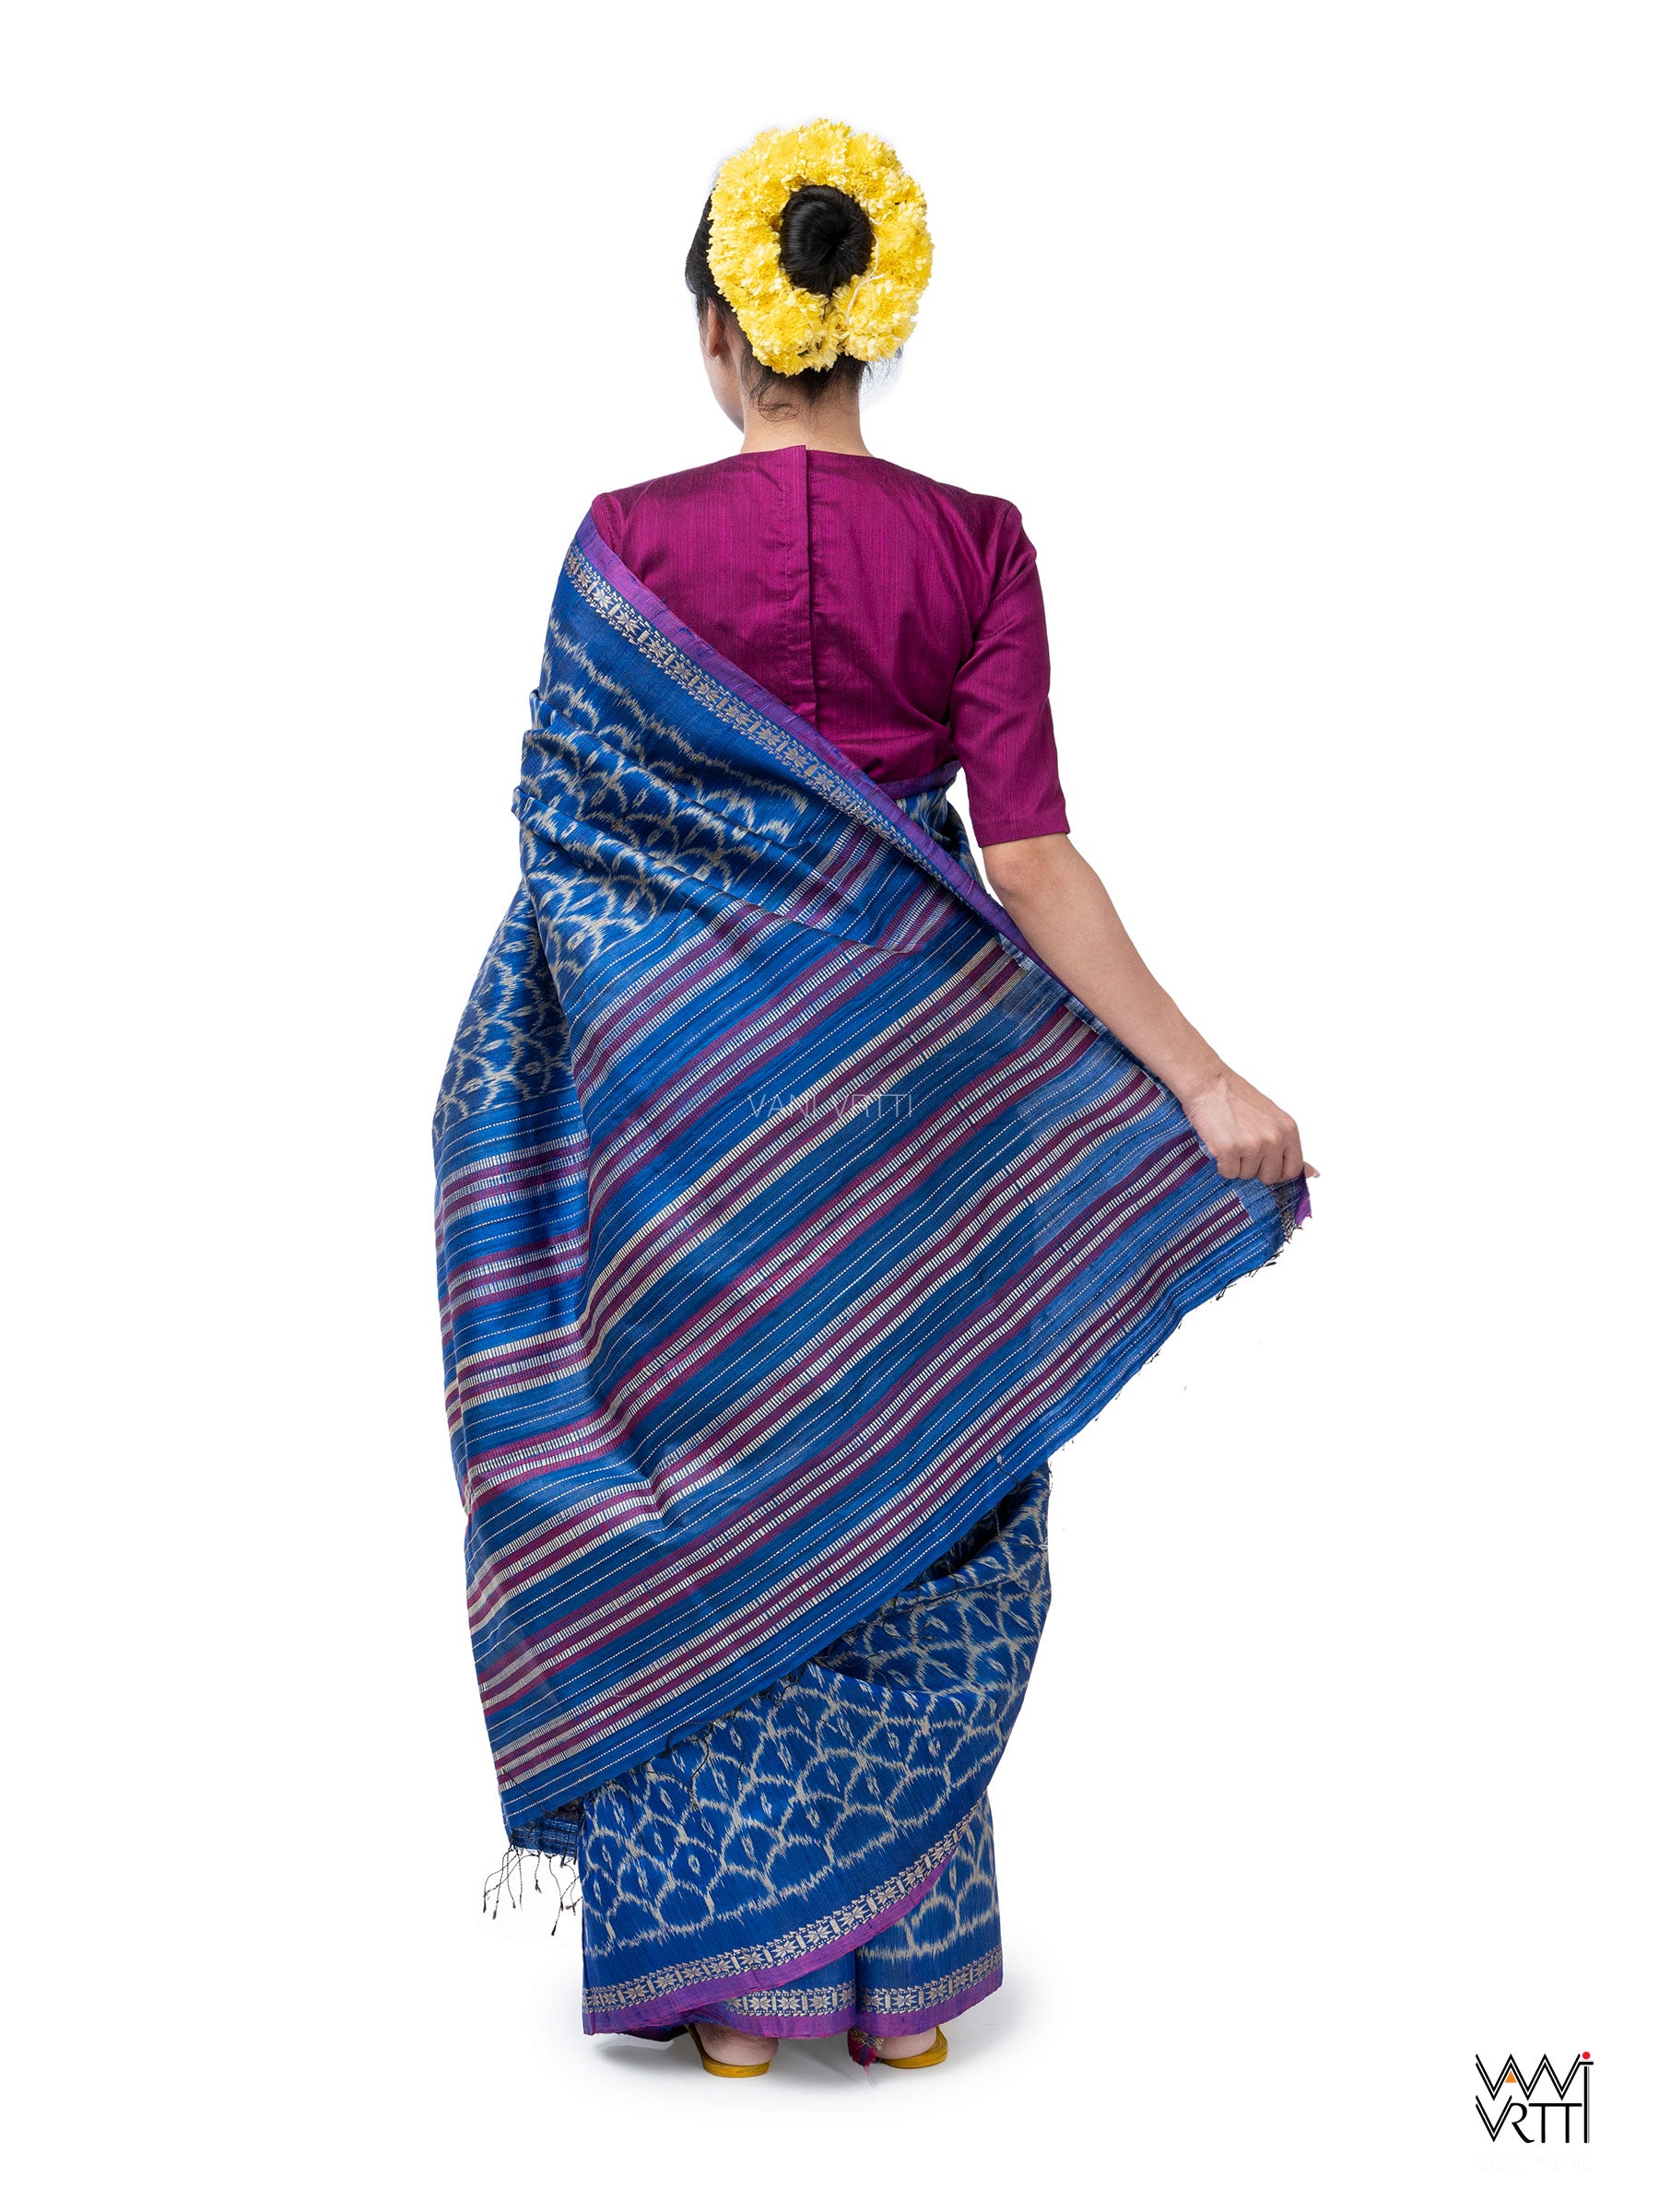 Royal Blue Samudra Lahar Ikat Handspun Tussar Silk Saree